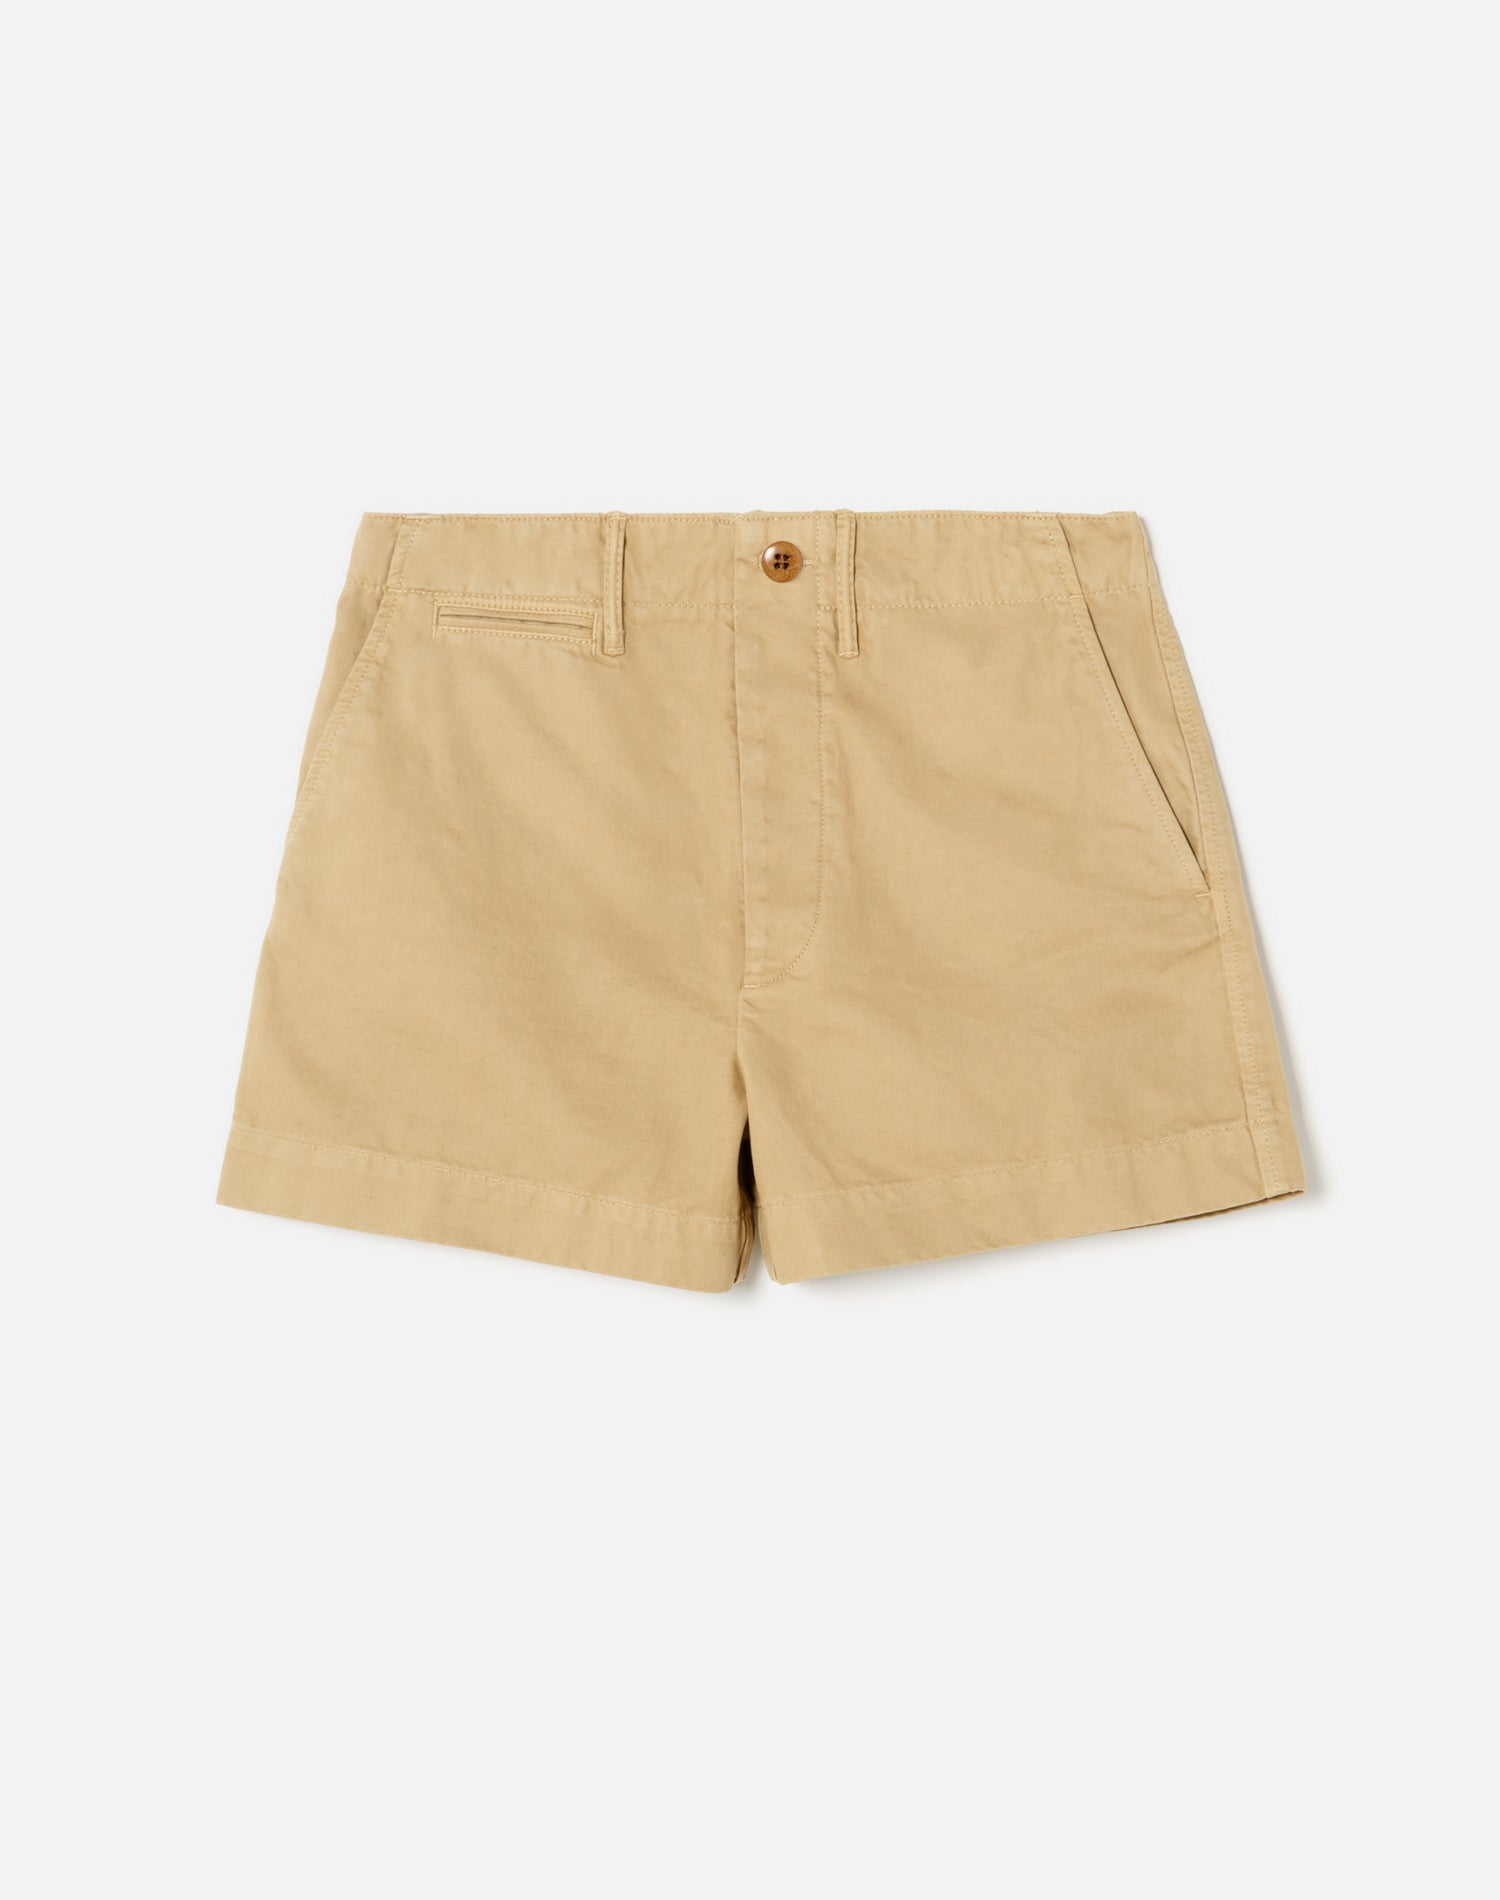 90s Trouser Shorts - Washed Khaki